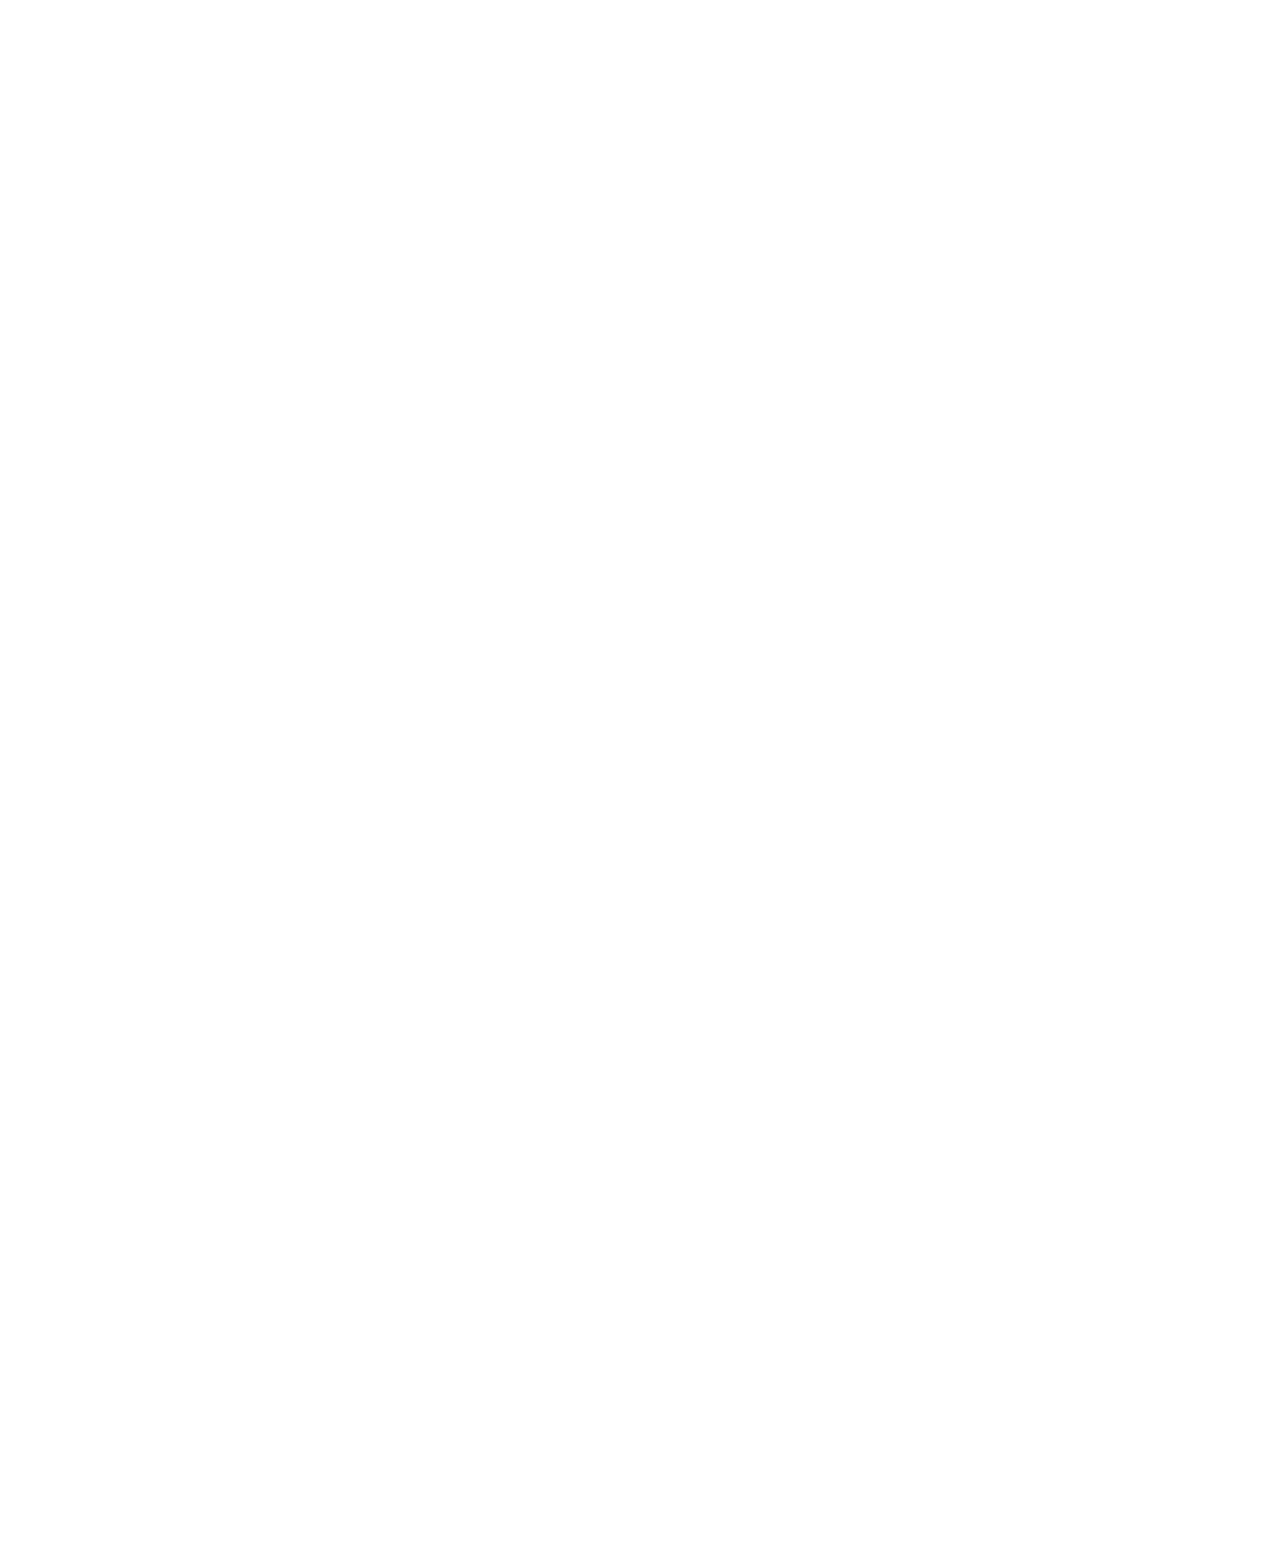 Gilat Satellite Networks logo for dark backgrounds (transparent PNG)